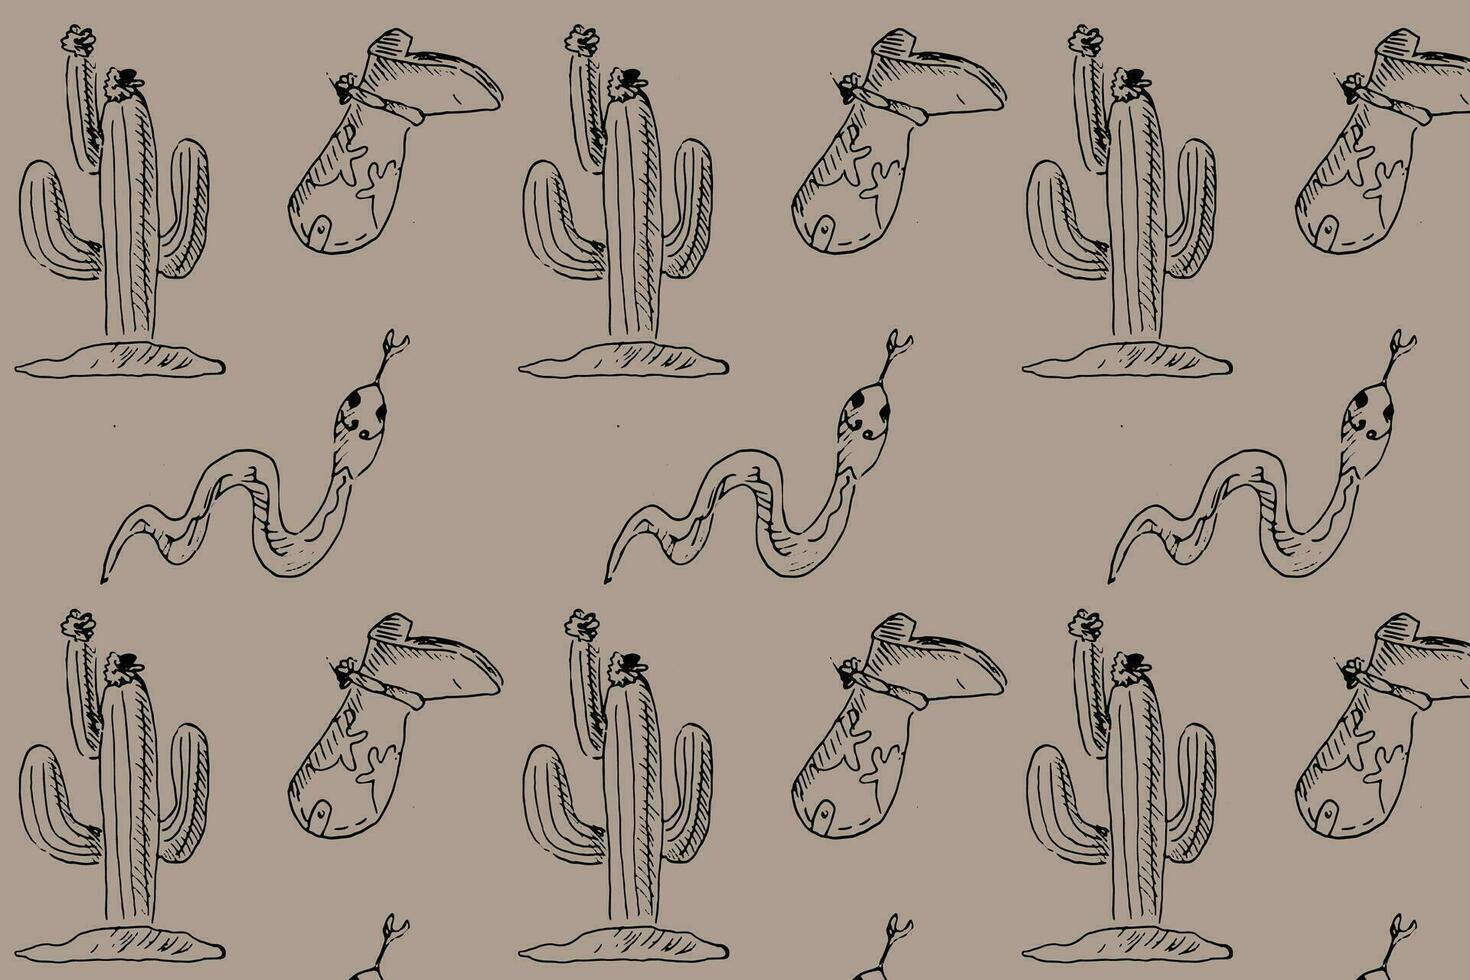 Hand gezeichnet skizzieren Muster wild Westen Kaktus, Stiefel, Schlange. Vektor Illustration im retro Stil. mystisch Cowboy oder Cowgirl Muster, nahtlos Hintergrund. Jahrgang Grafik.